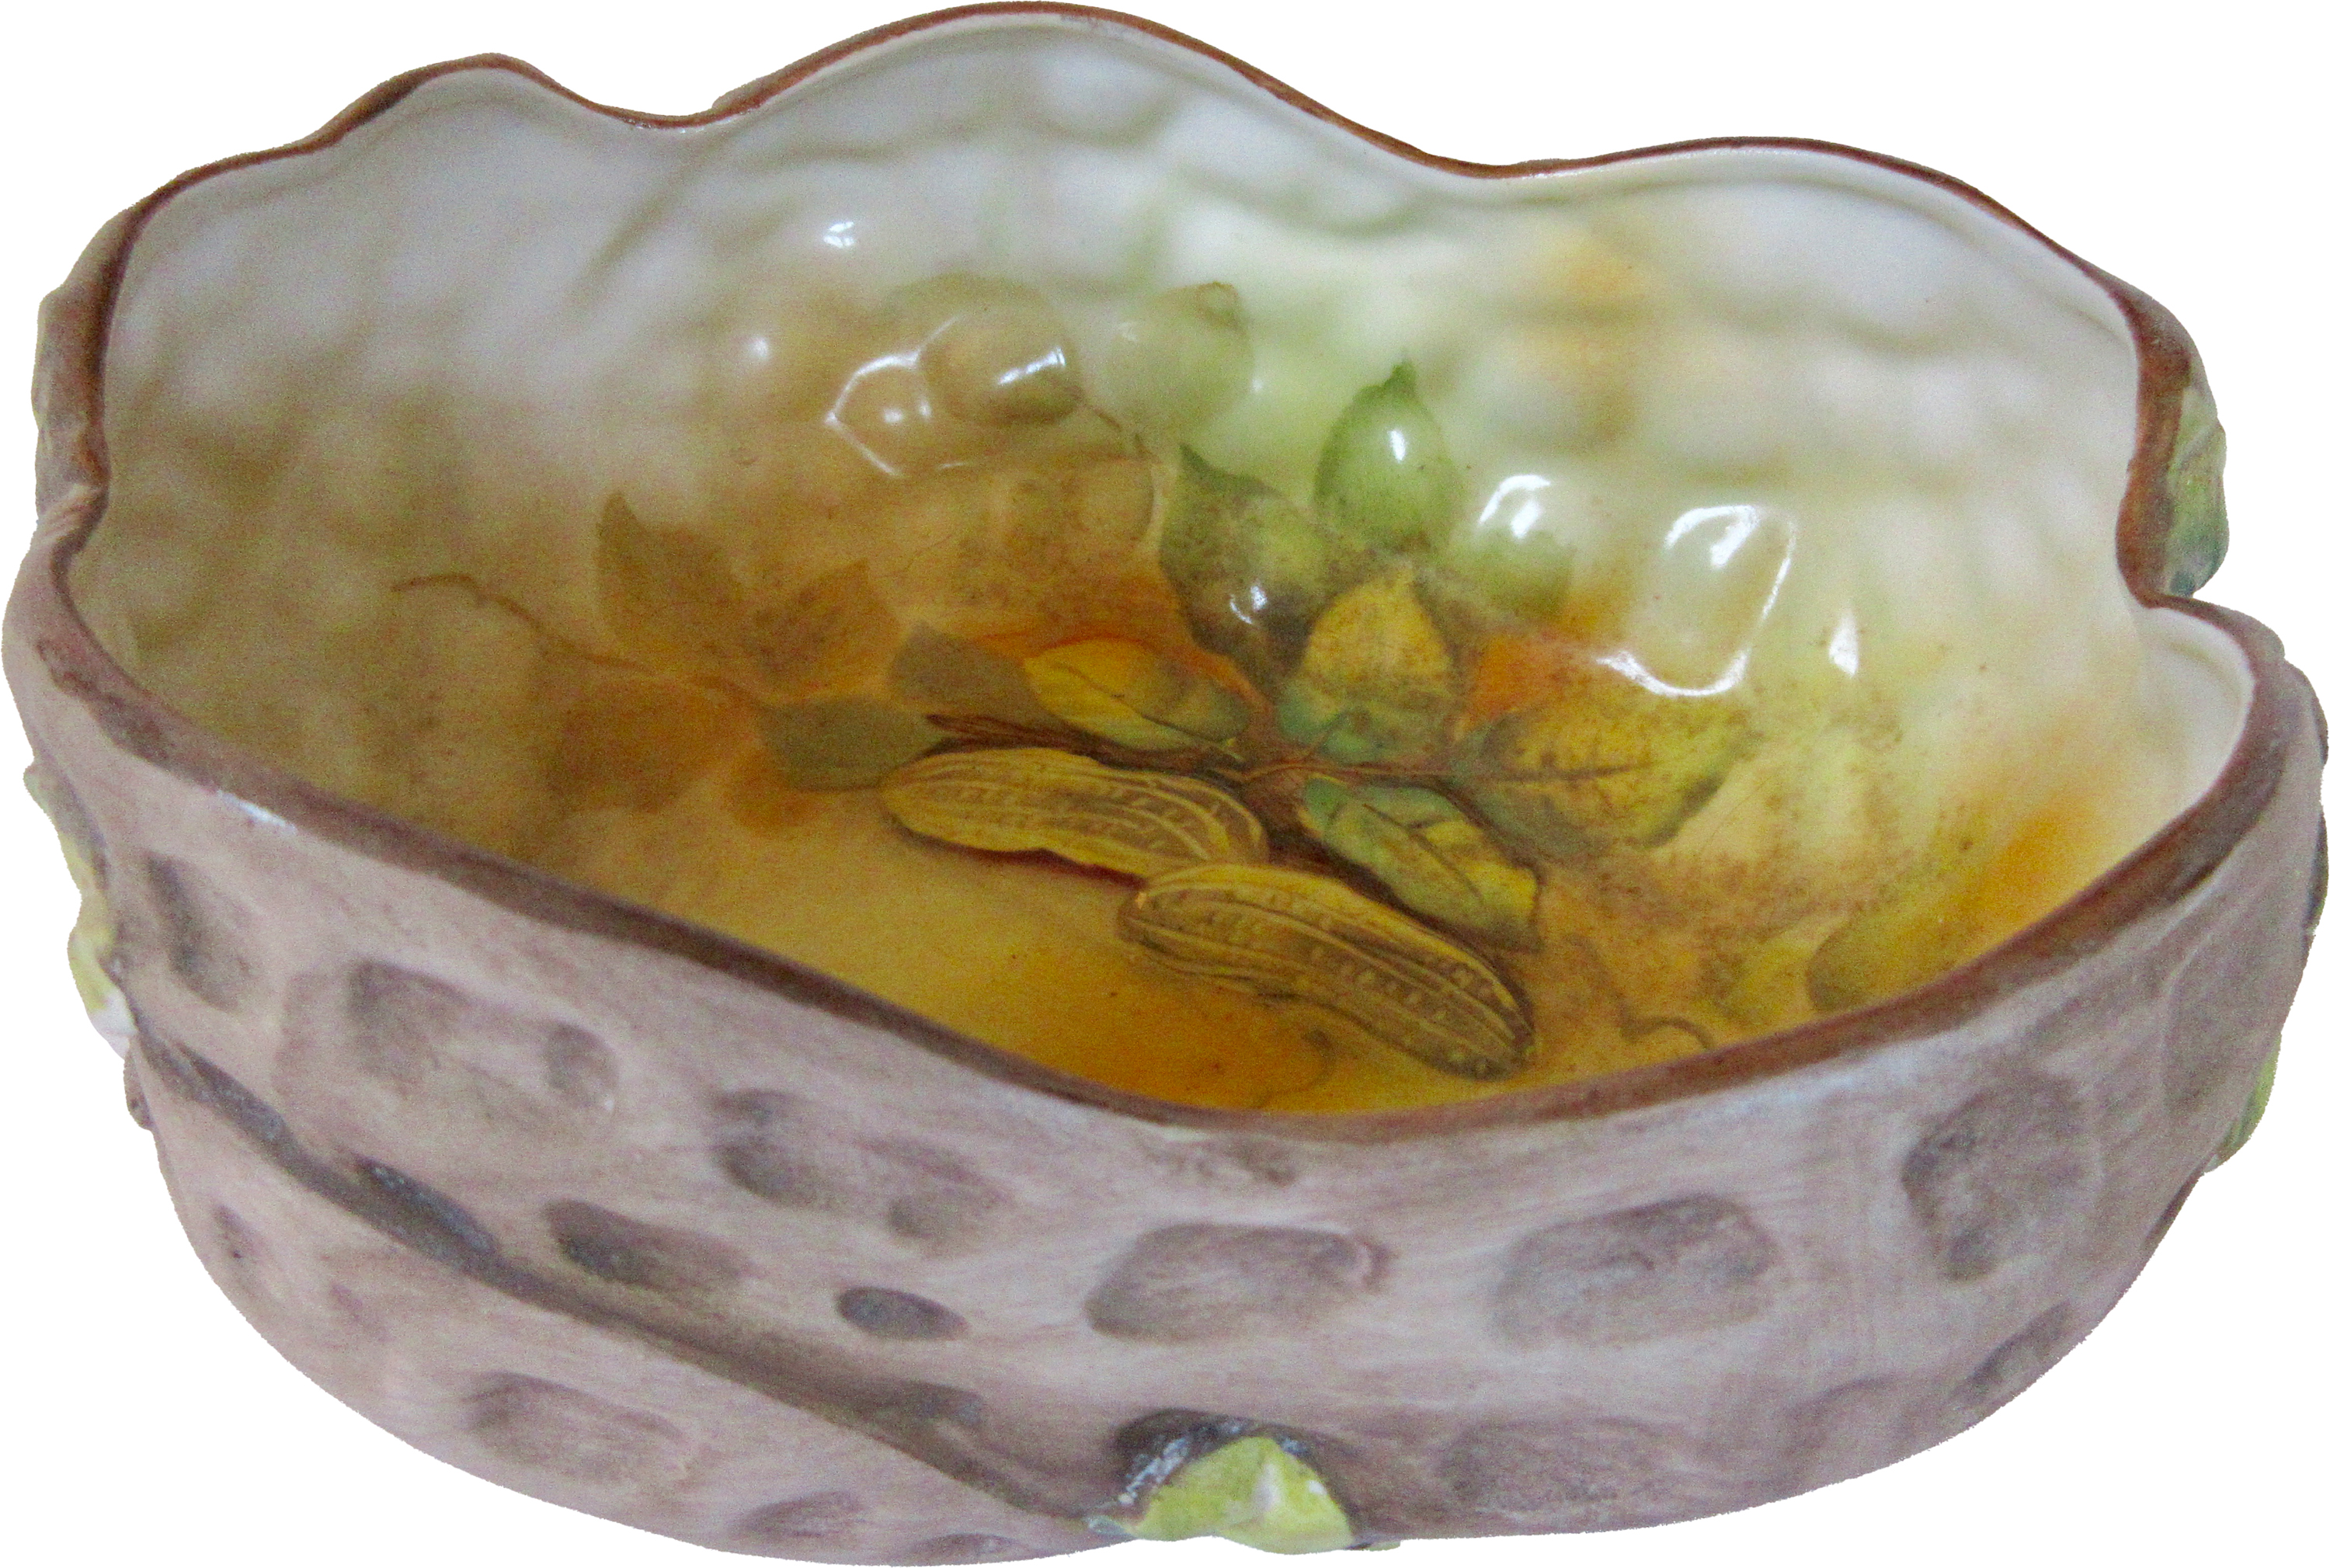 Japanese Porcelain Peanut Bowl c. 1900